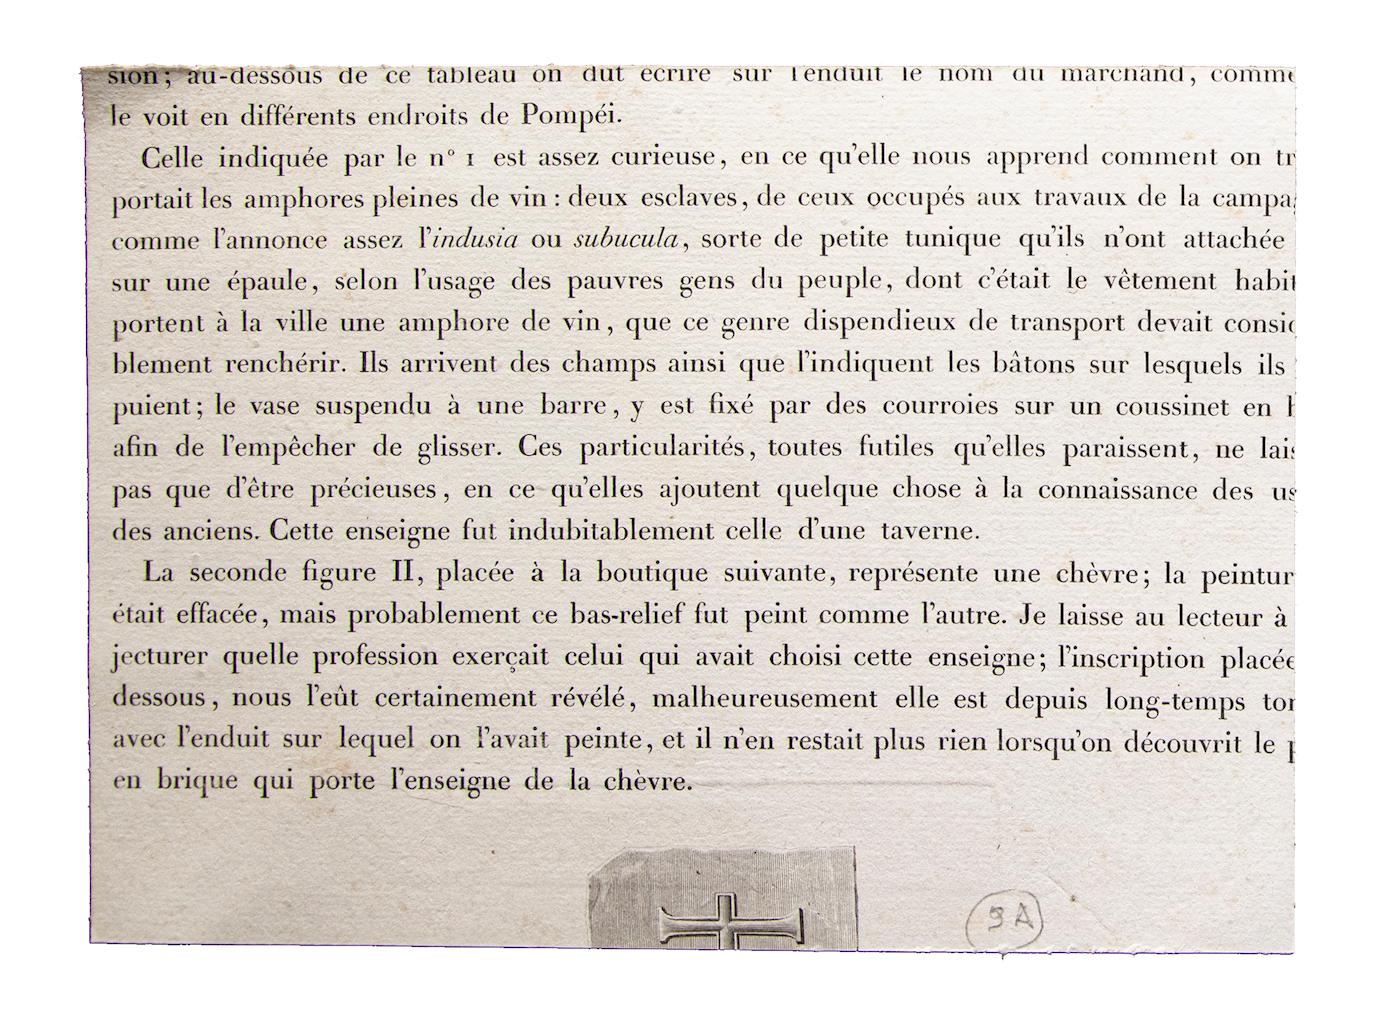 Empereur romain - Impression d'origine de F. Mazois - Début du 19ème siècle - Print de Francois Mazois